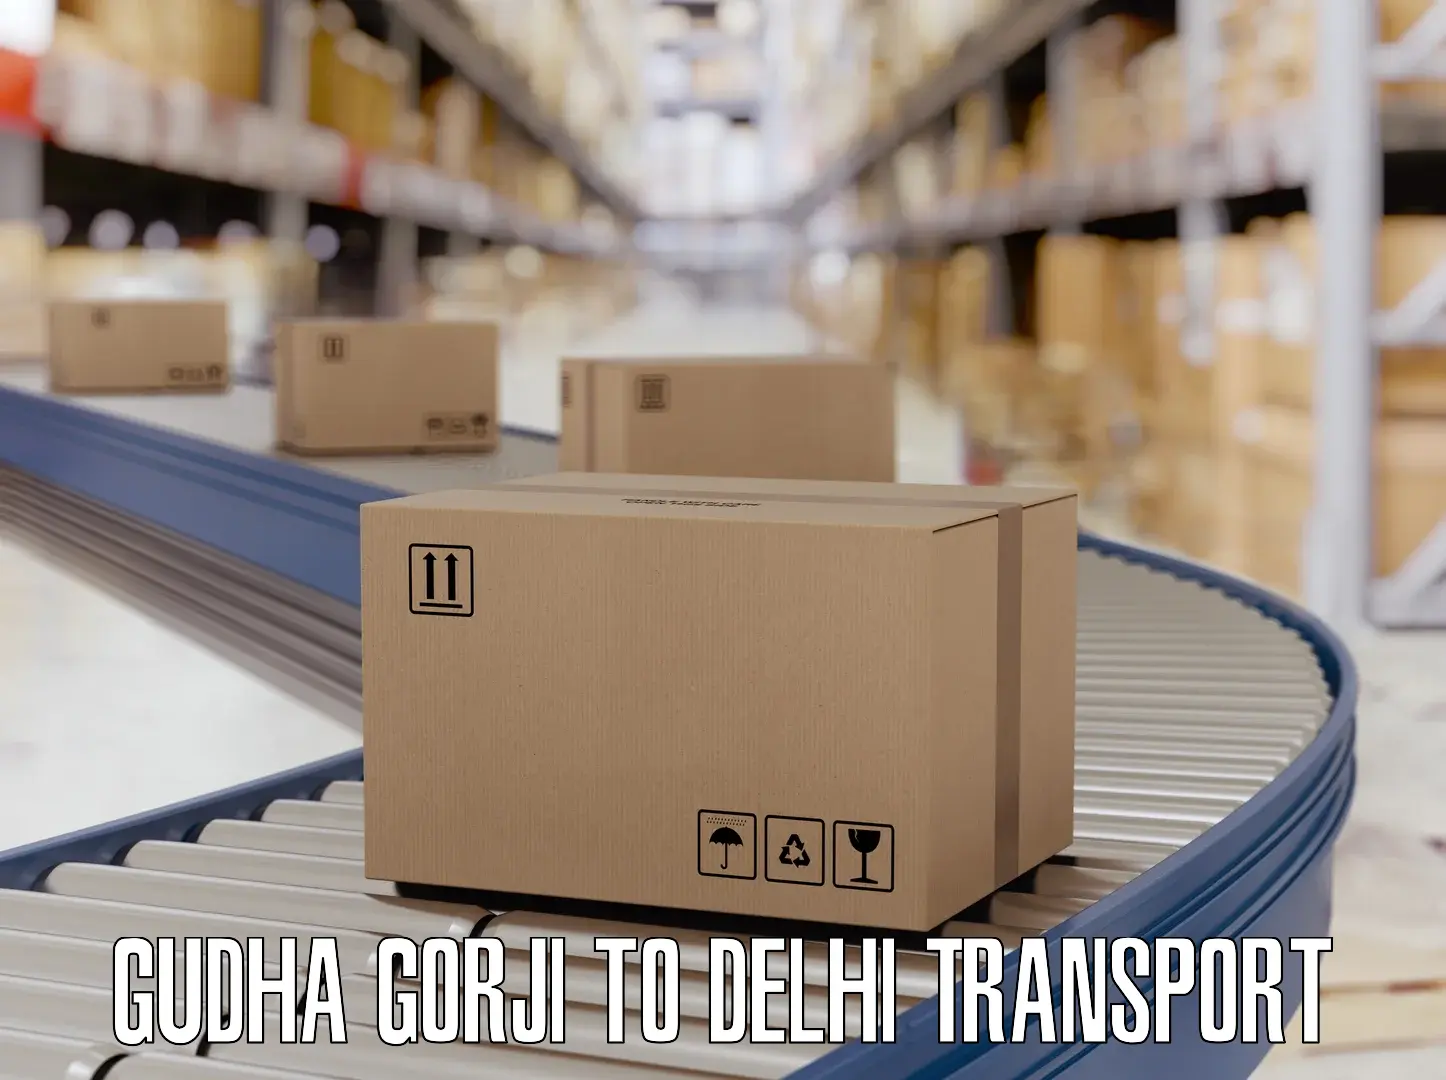 Pick up transport service Gudha Gorji to Naraina Industrial Estate